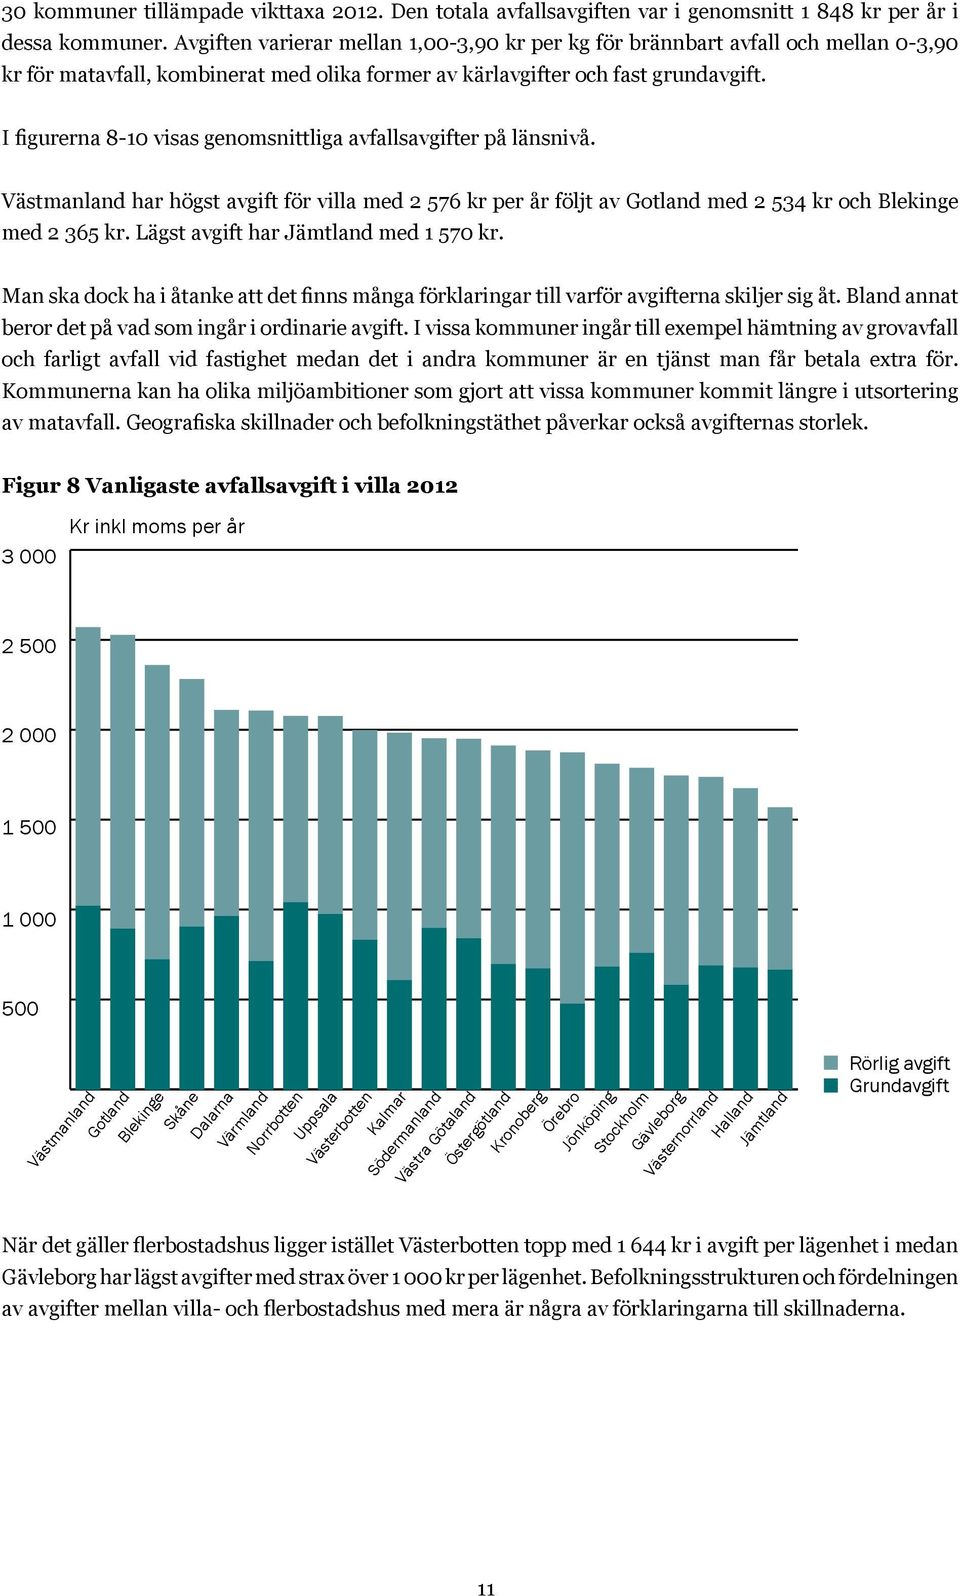 I figurerna 8-10 visas genomsnittliga avfallsavgifter på länsnivå. Västmanland har högst avgift för villa med 2 576 kr per år följt av Gotland med 2 534 kr och Blekinge med 2 365 kr.